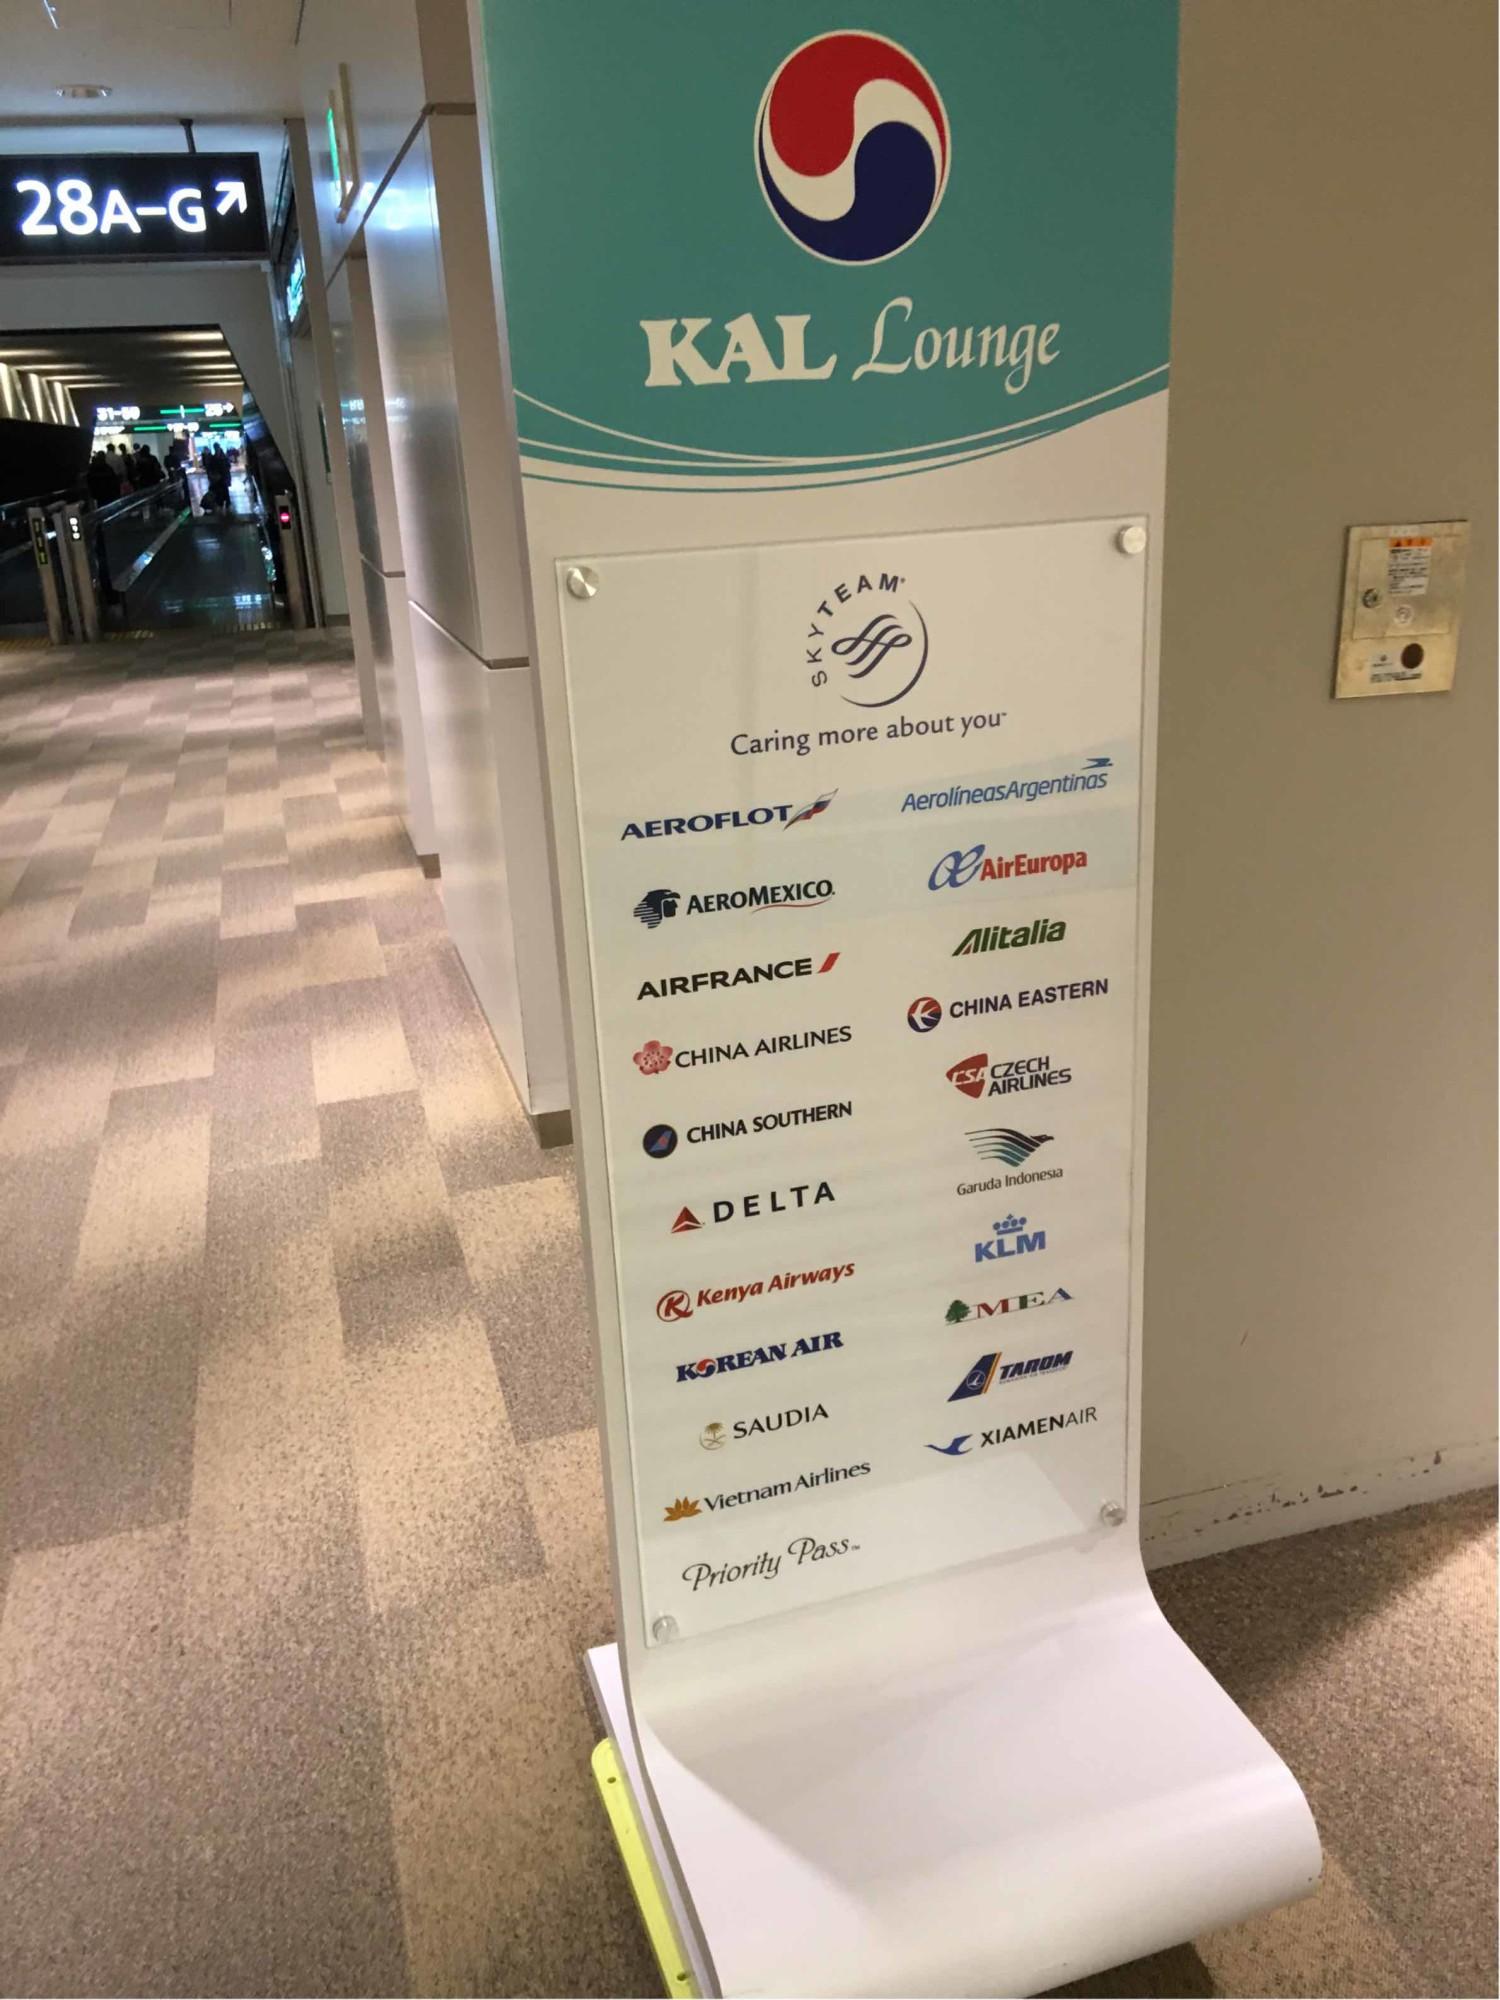 Korean Air KAL Lounge image 12 of 58